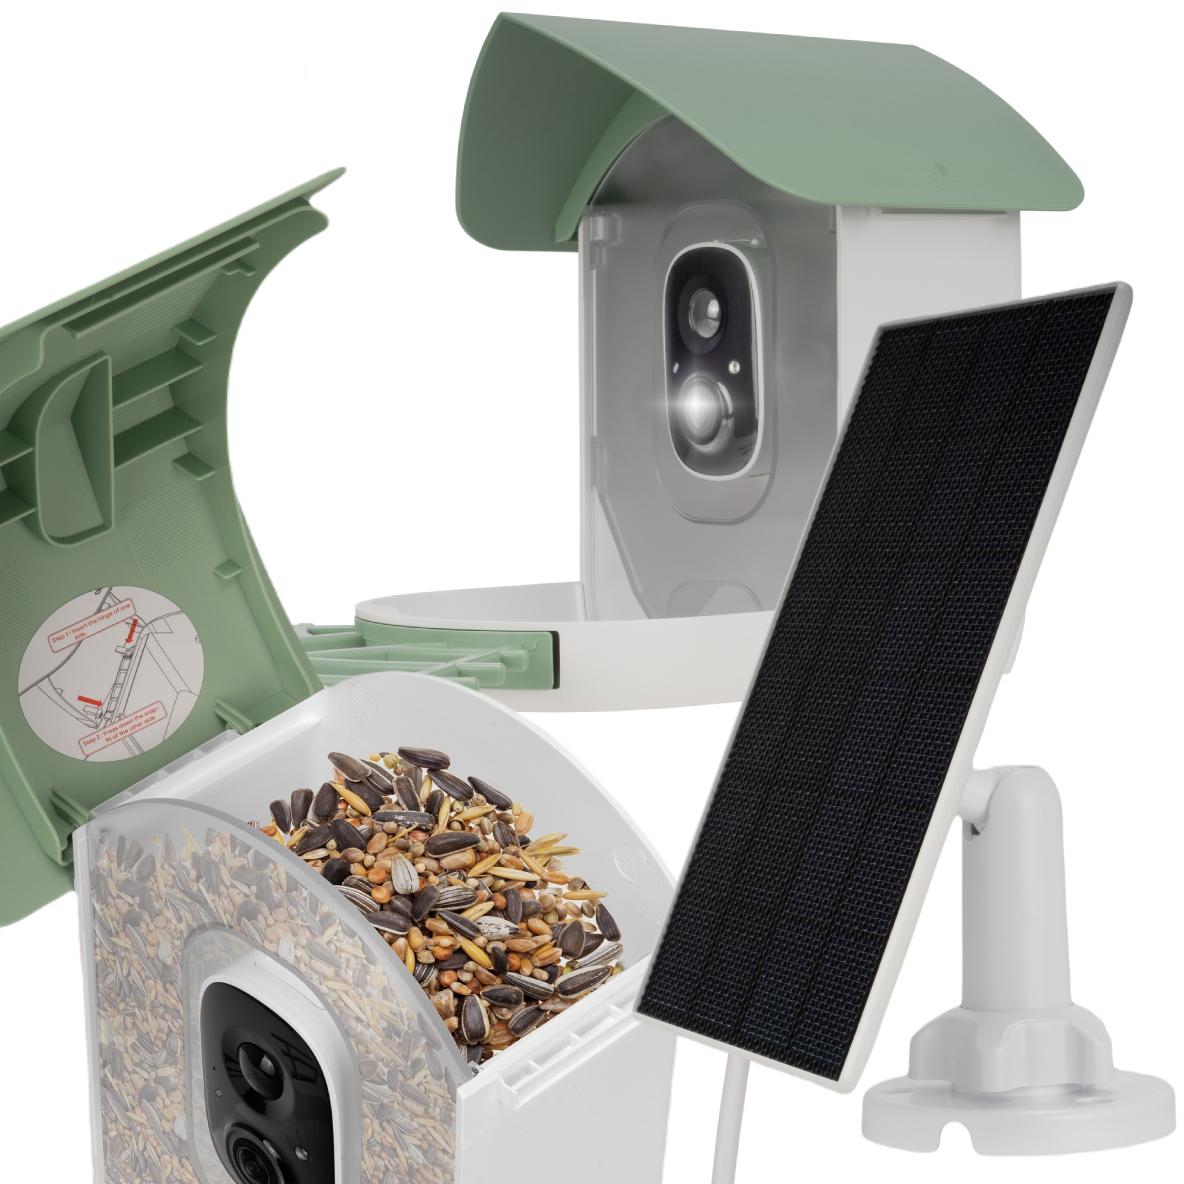 Kamera fotopułapka obserwacyjna Redleaf RD001 z karmnikiem dla ptaków — najważniejsze cechy produktu: